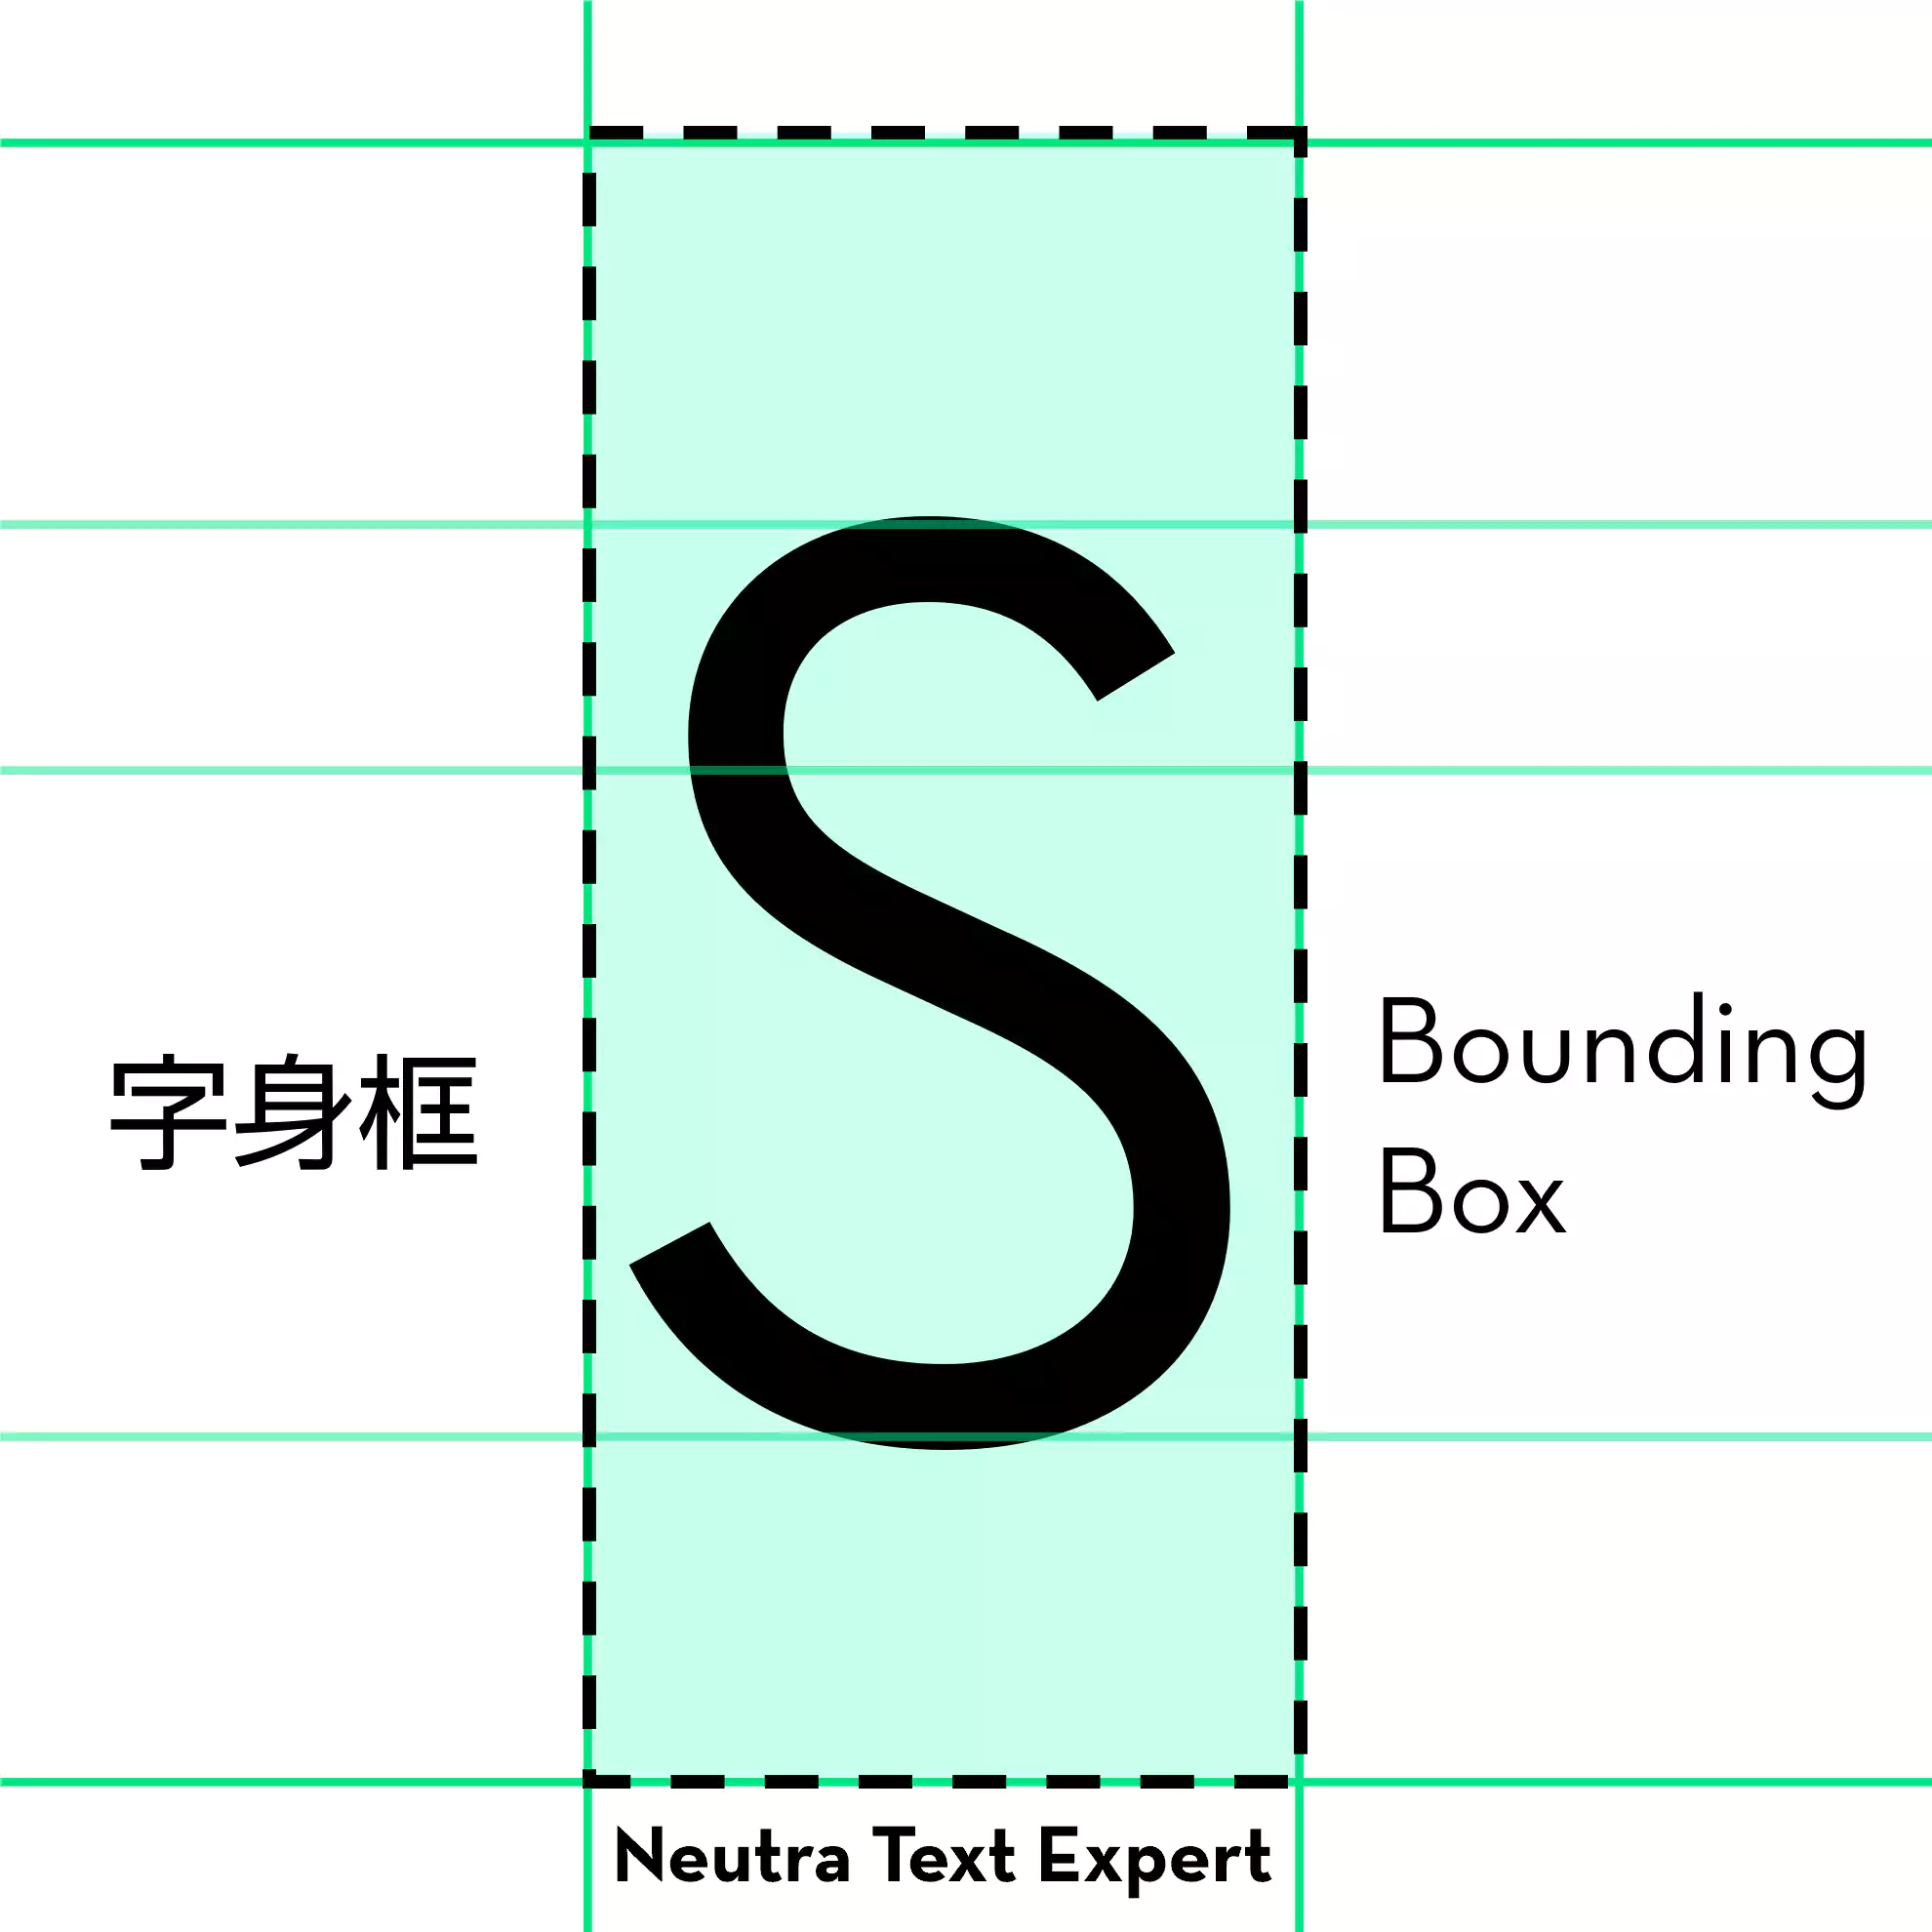 字体 Neutra Text Expert Book 的大写字母 S